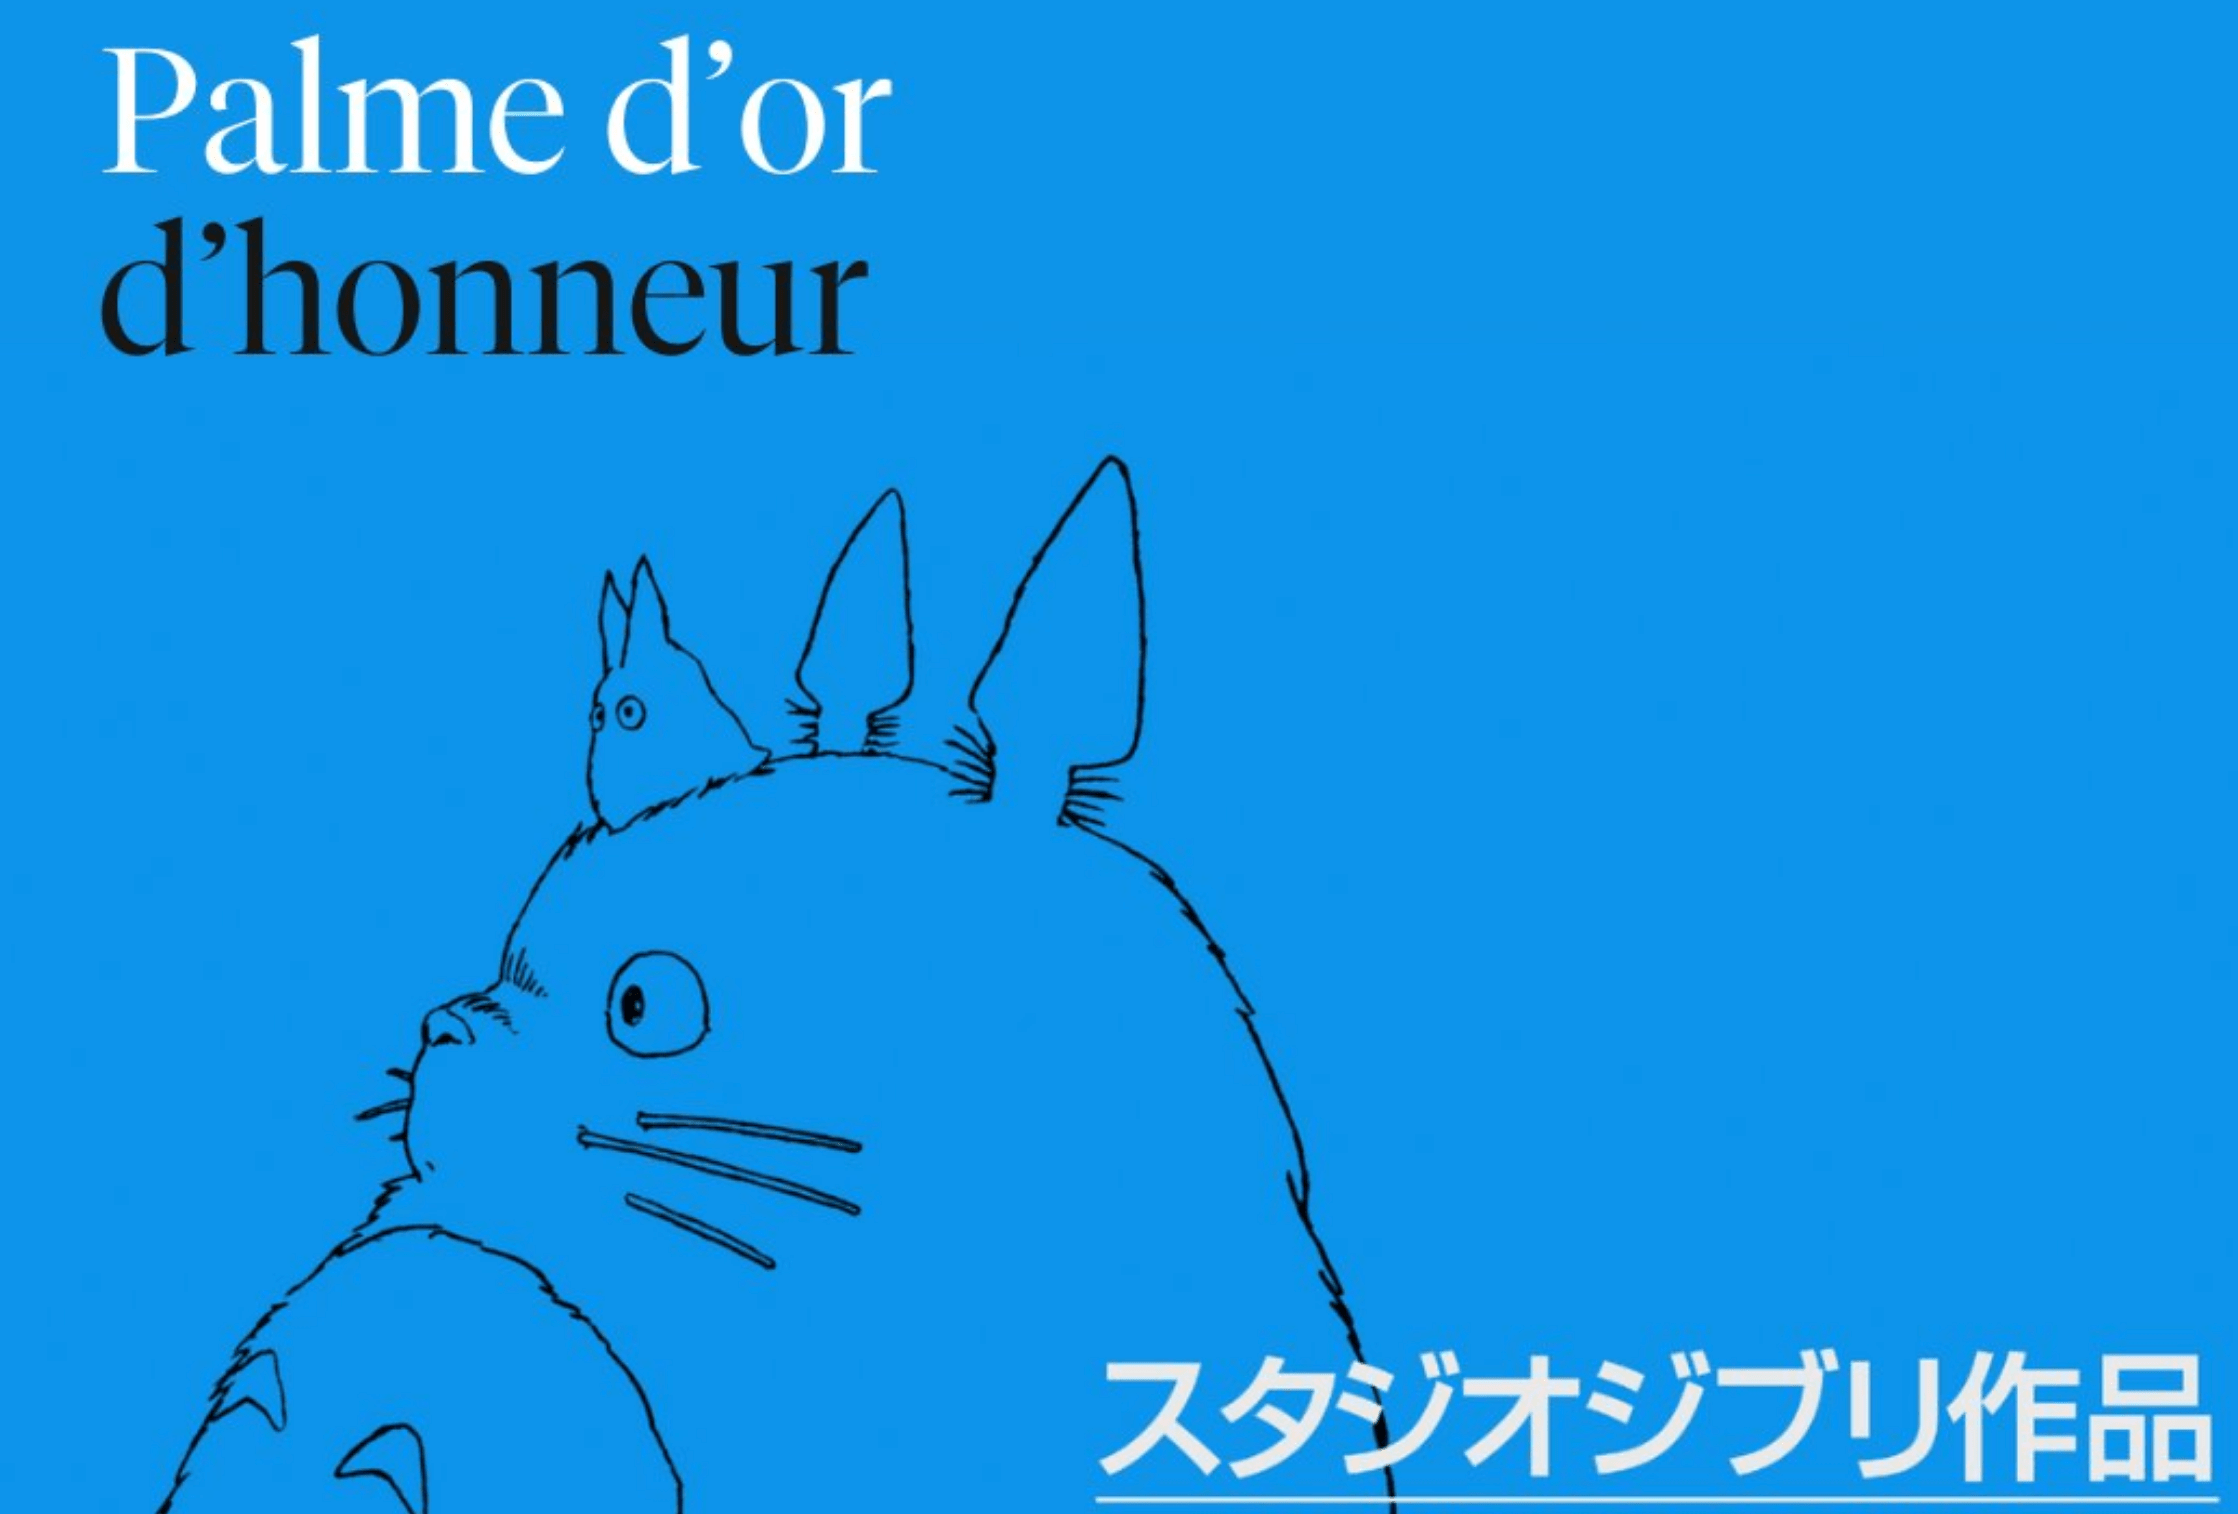 Studio Ghibli seguirá asumiendo desafíos tras anuncio de la Palma de Oro de Cannes